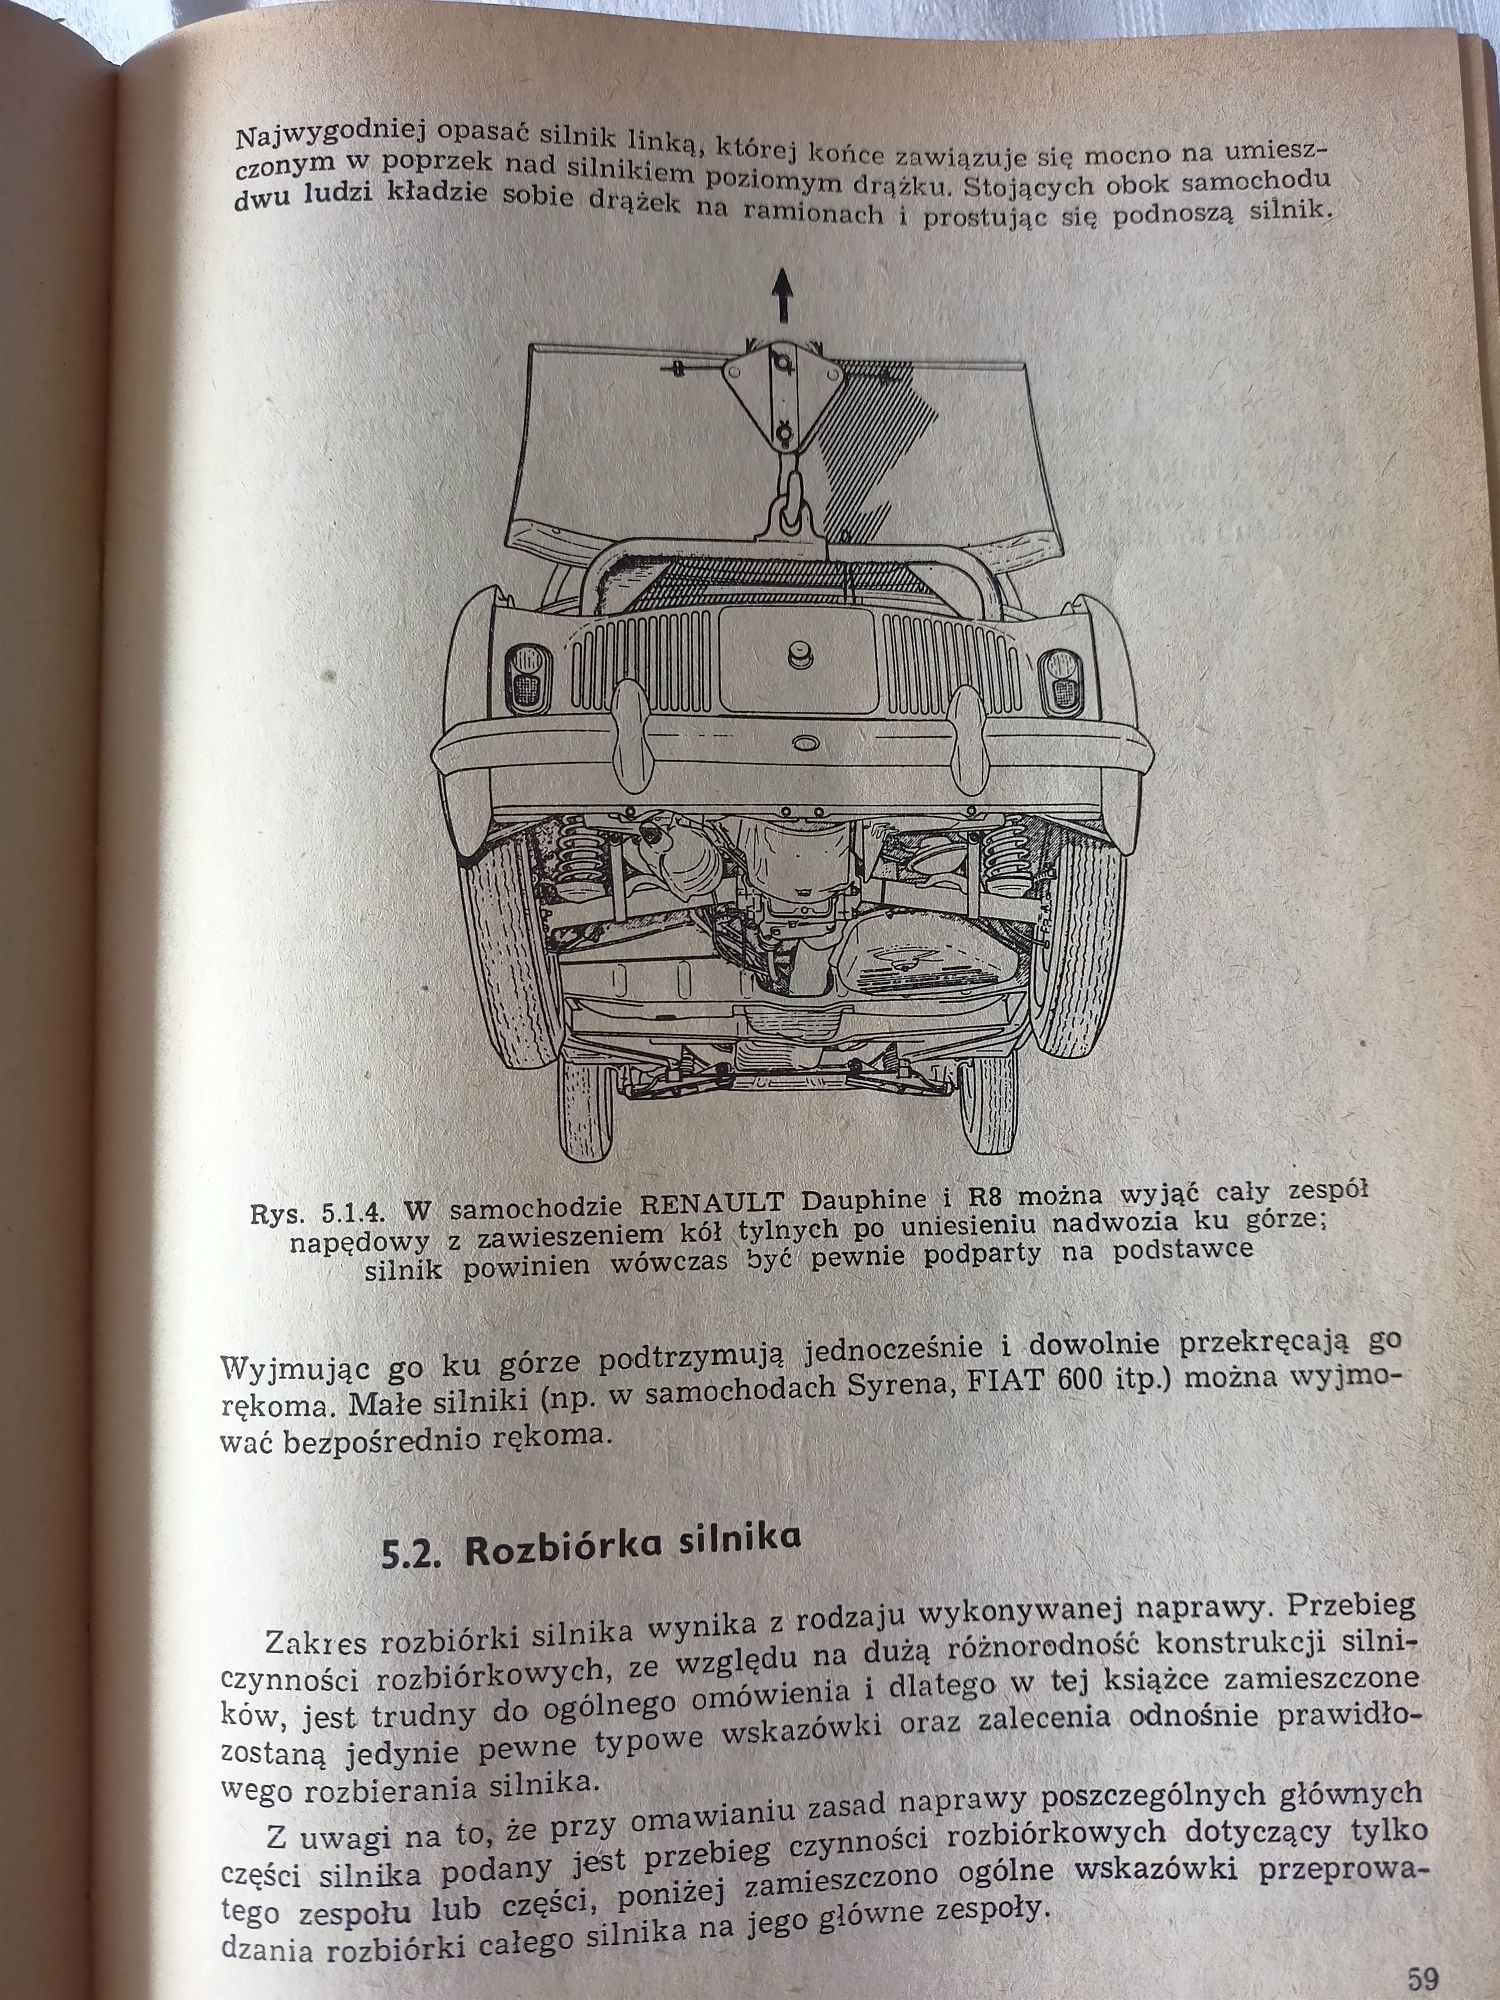 Naprawa samochodów osobowych - 1971